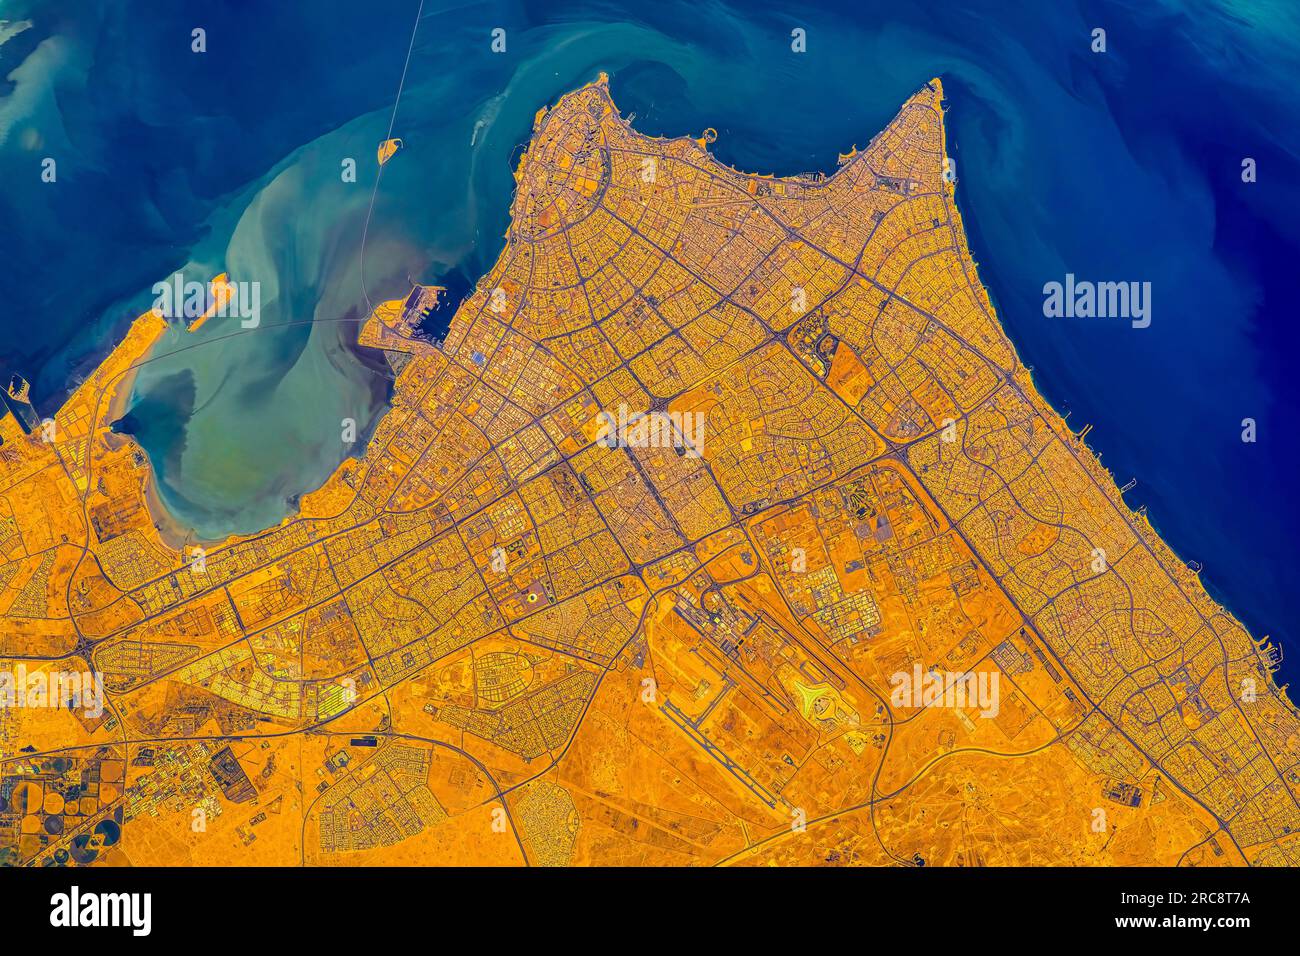 Vue aérienne ou satellite de la ville de Koweït. Image de la NASA. Directives d'utilisation des médias : https://www.nasa.gov/multimedia/guidelines/index.html Banque D'Images